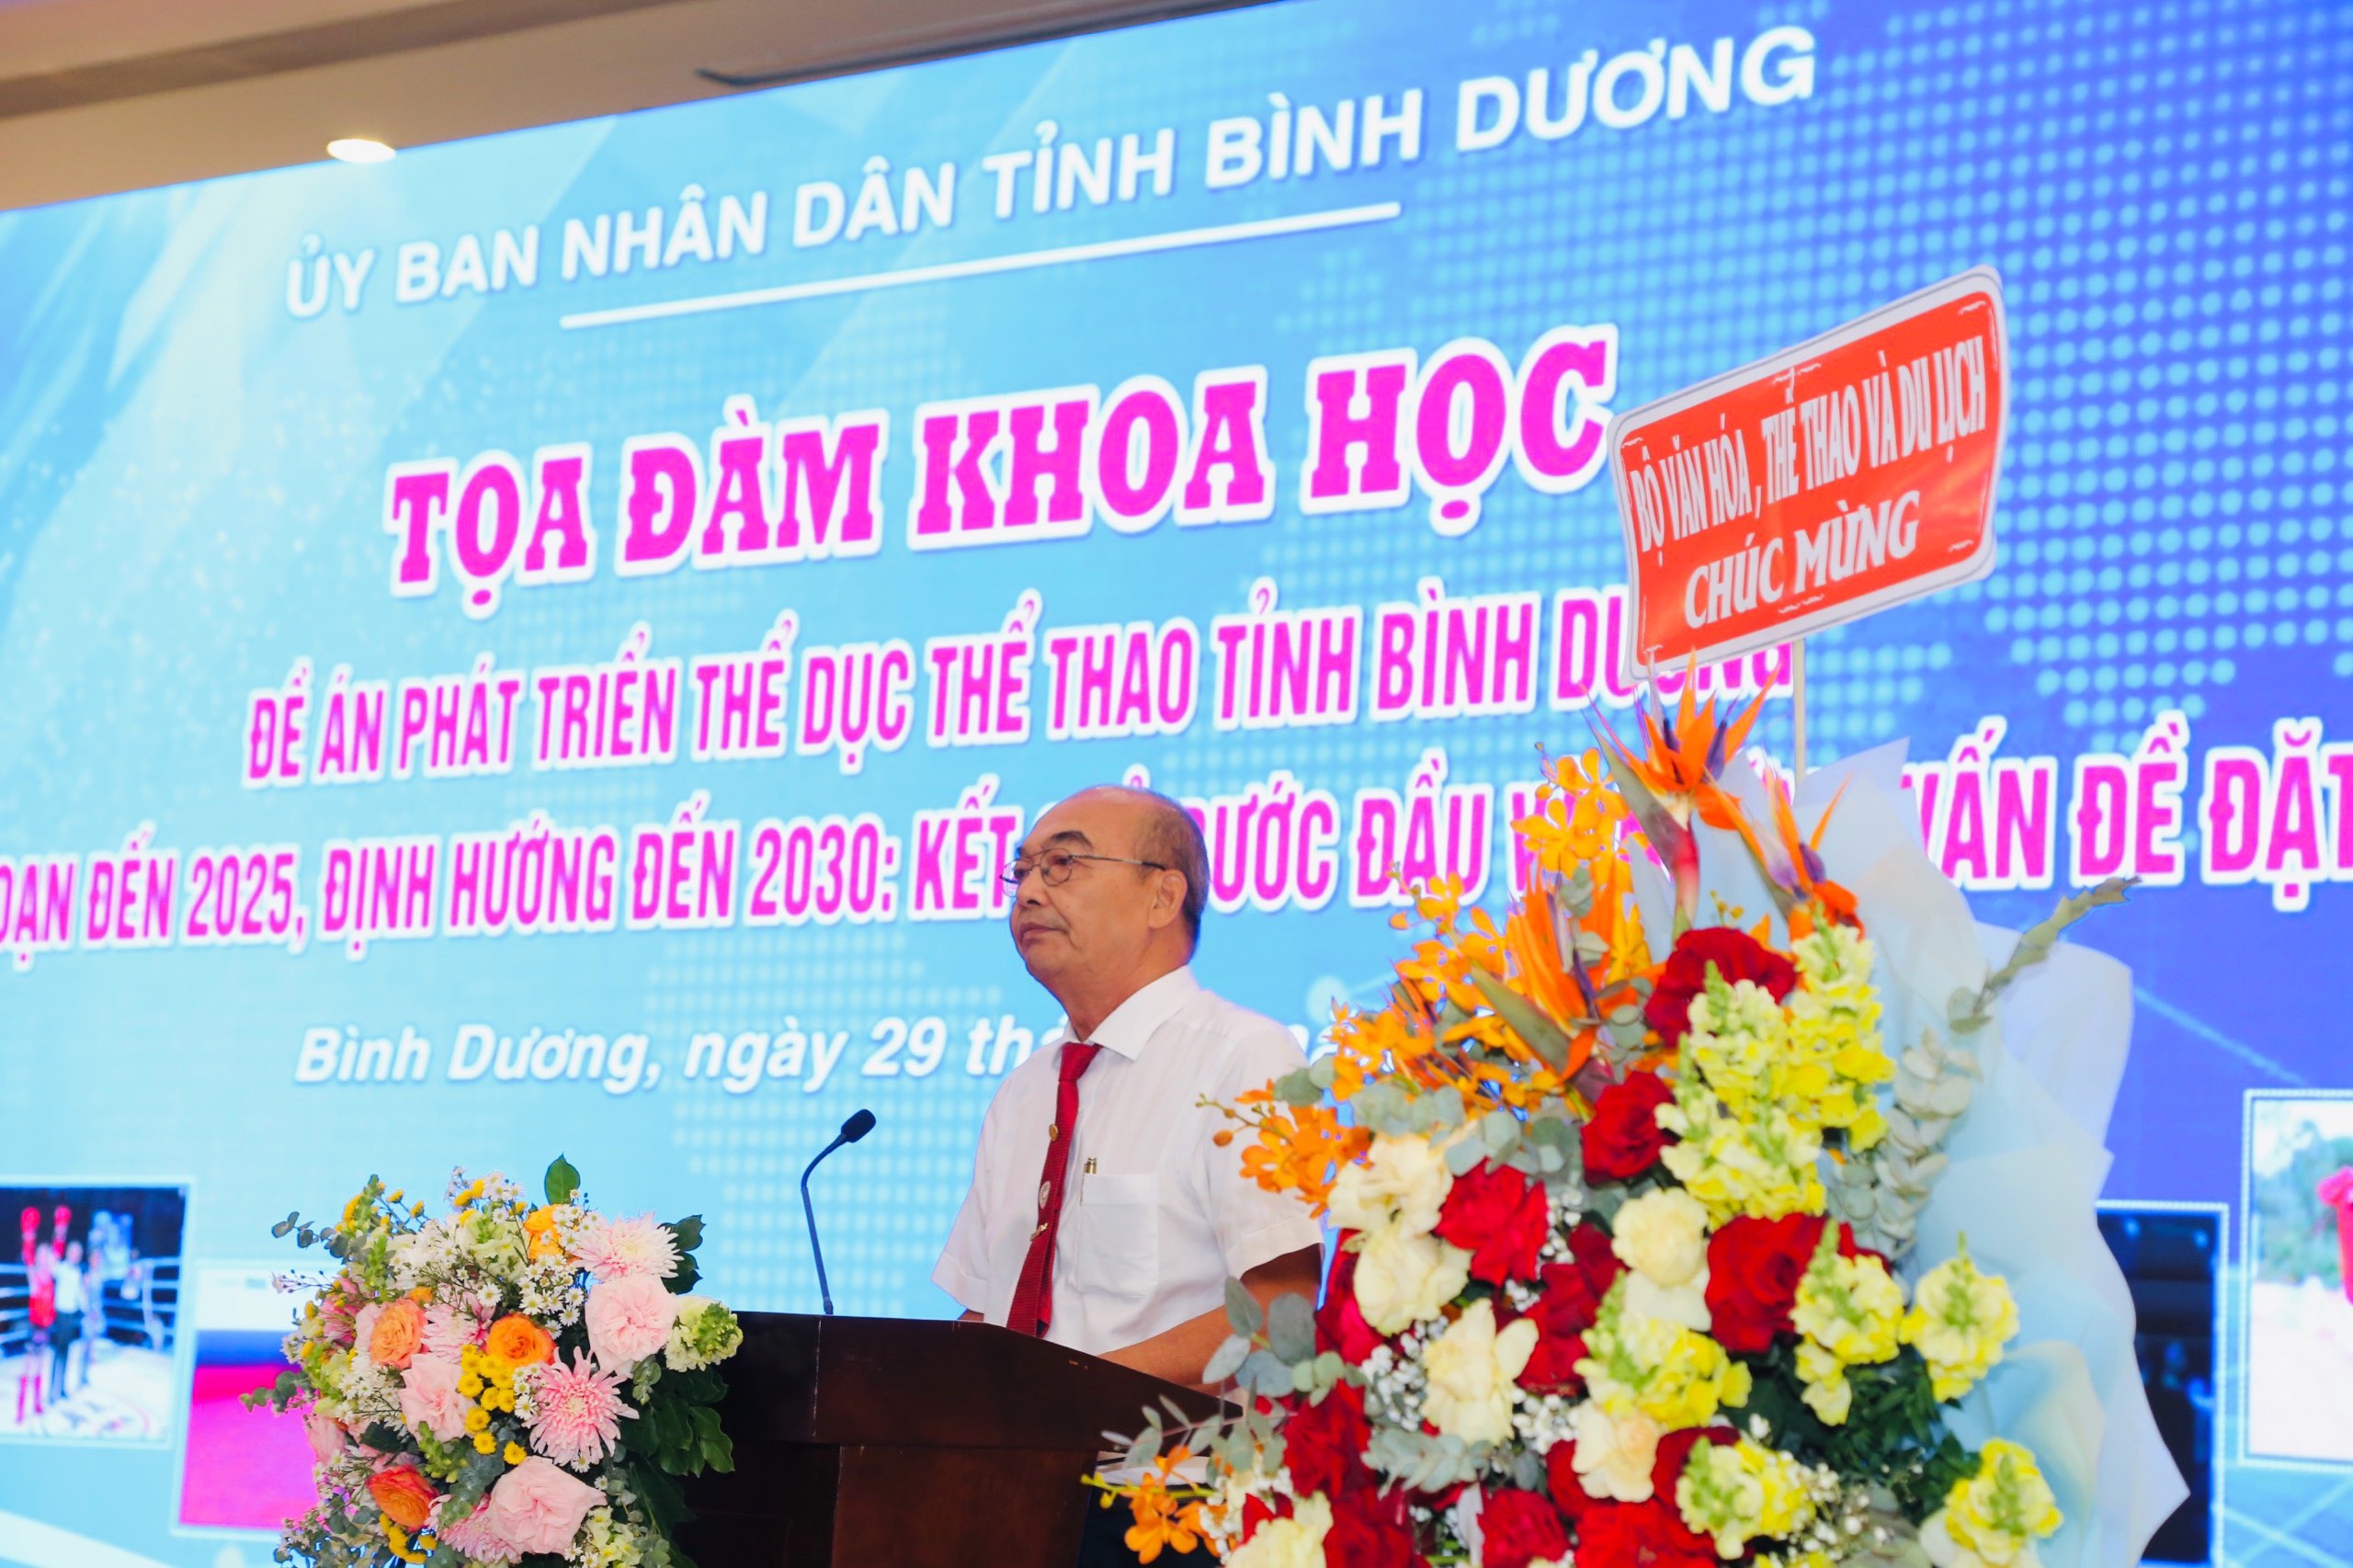 PGS.TS Lê Thiết Can - Nguyên Phó Hiệu trưởng Trường Đại học TDTT TP.HCM phát biểu tham luận tại toạ đàm